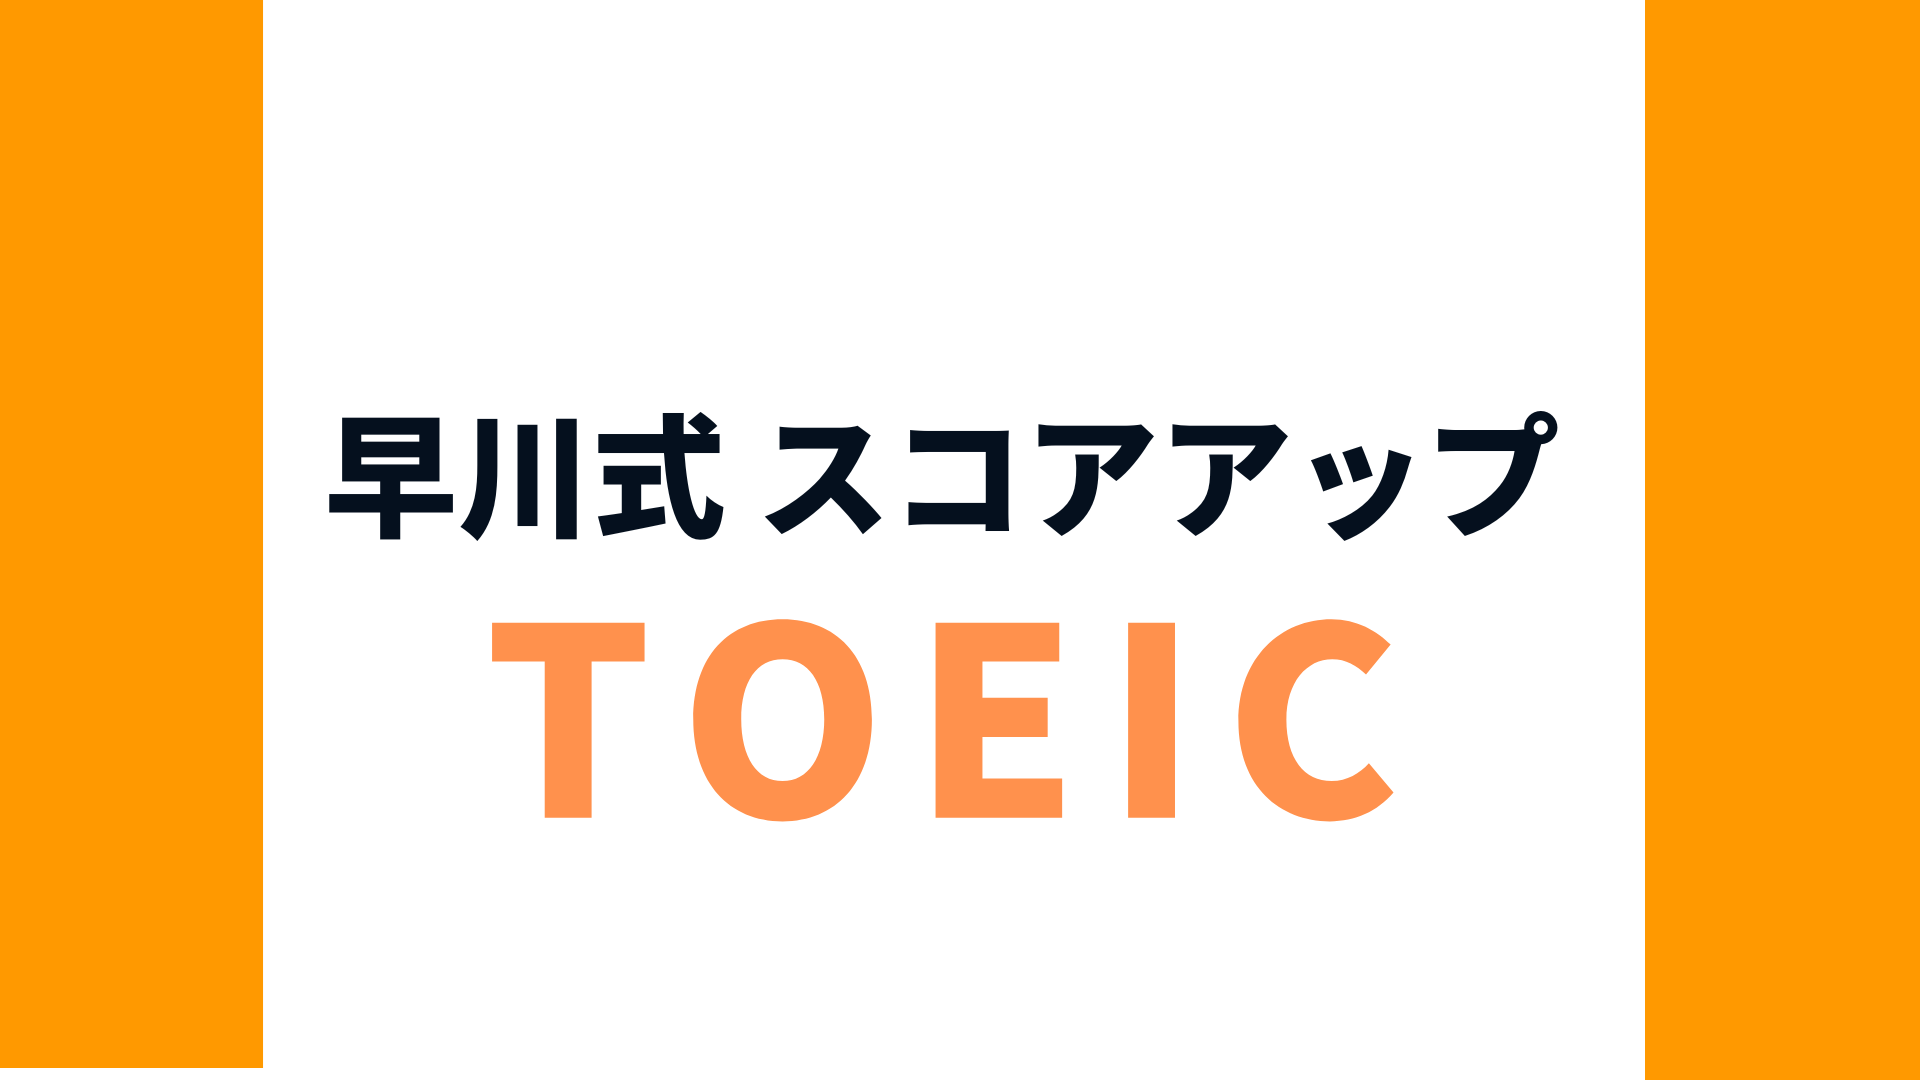 早川式～レベル別 TOEIC(R) L&R TEST スコアアップセミナー